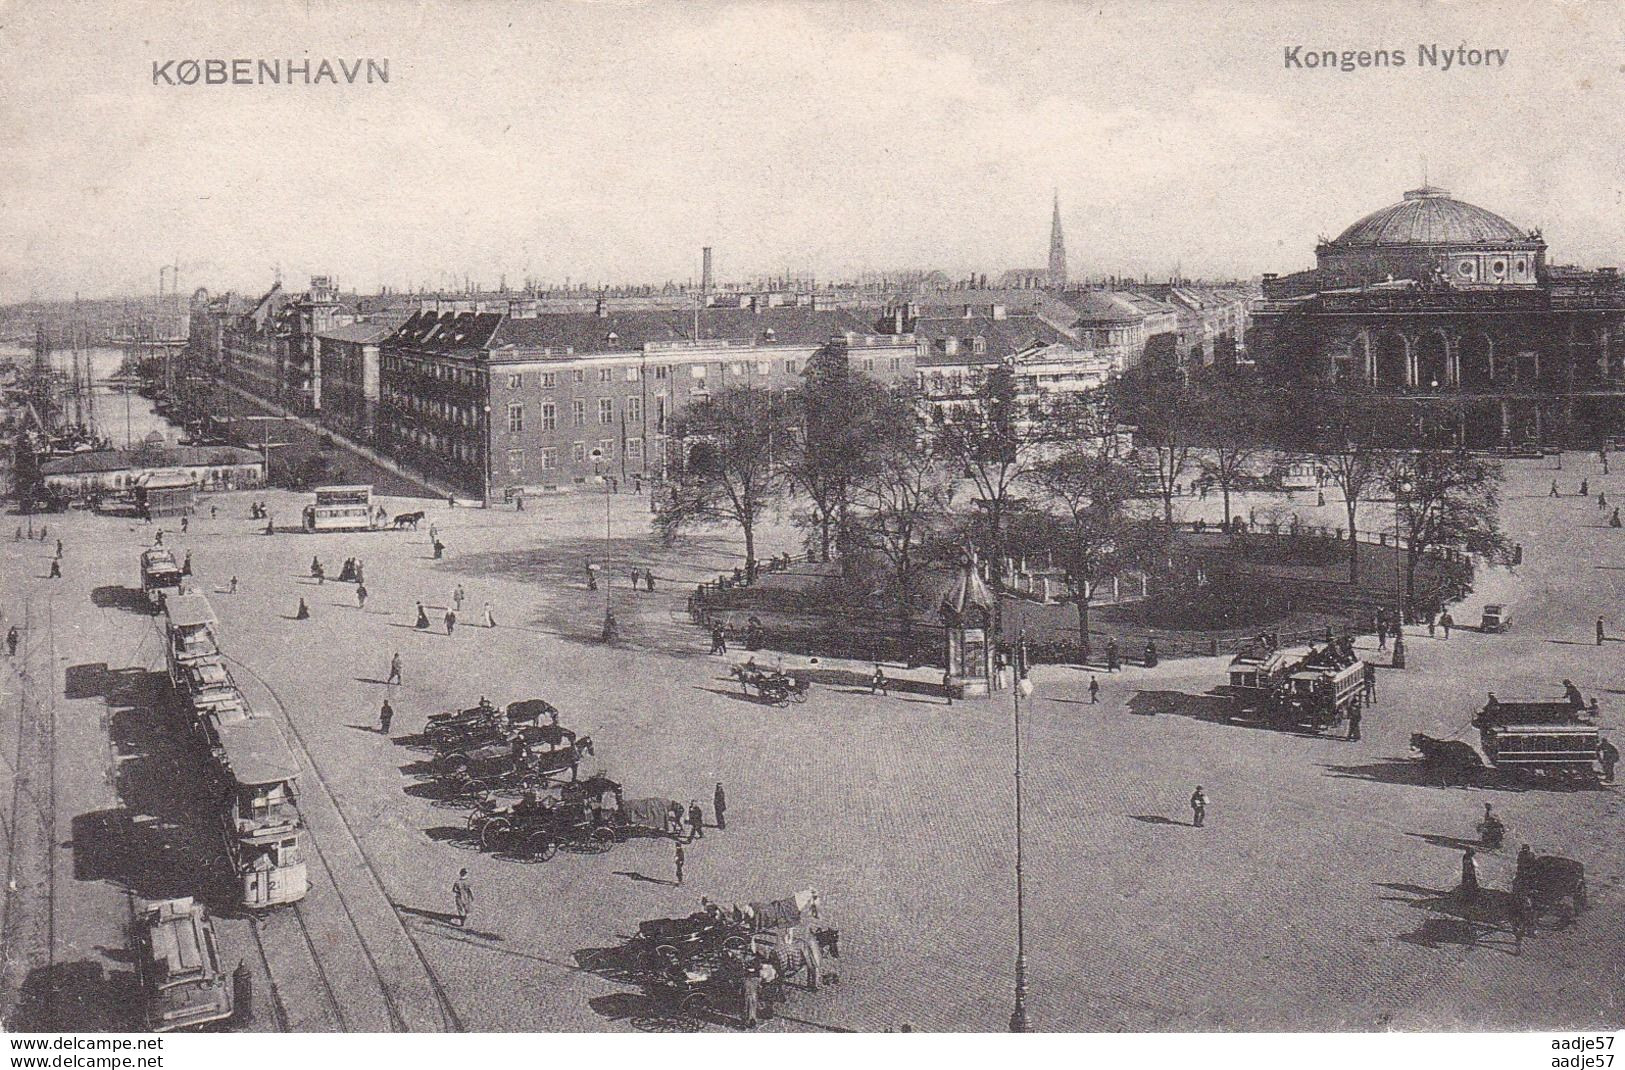 Kopenhagen Tram Kongens Nyforv - Tramways